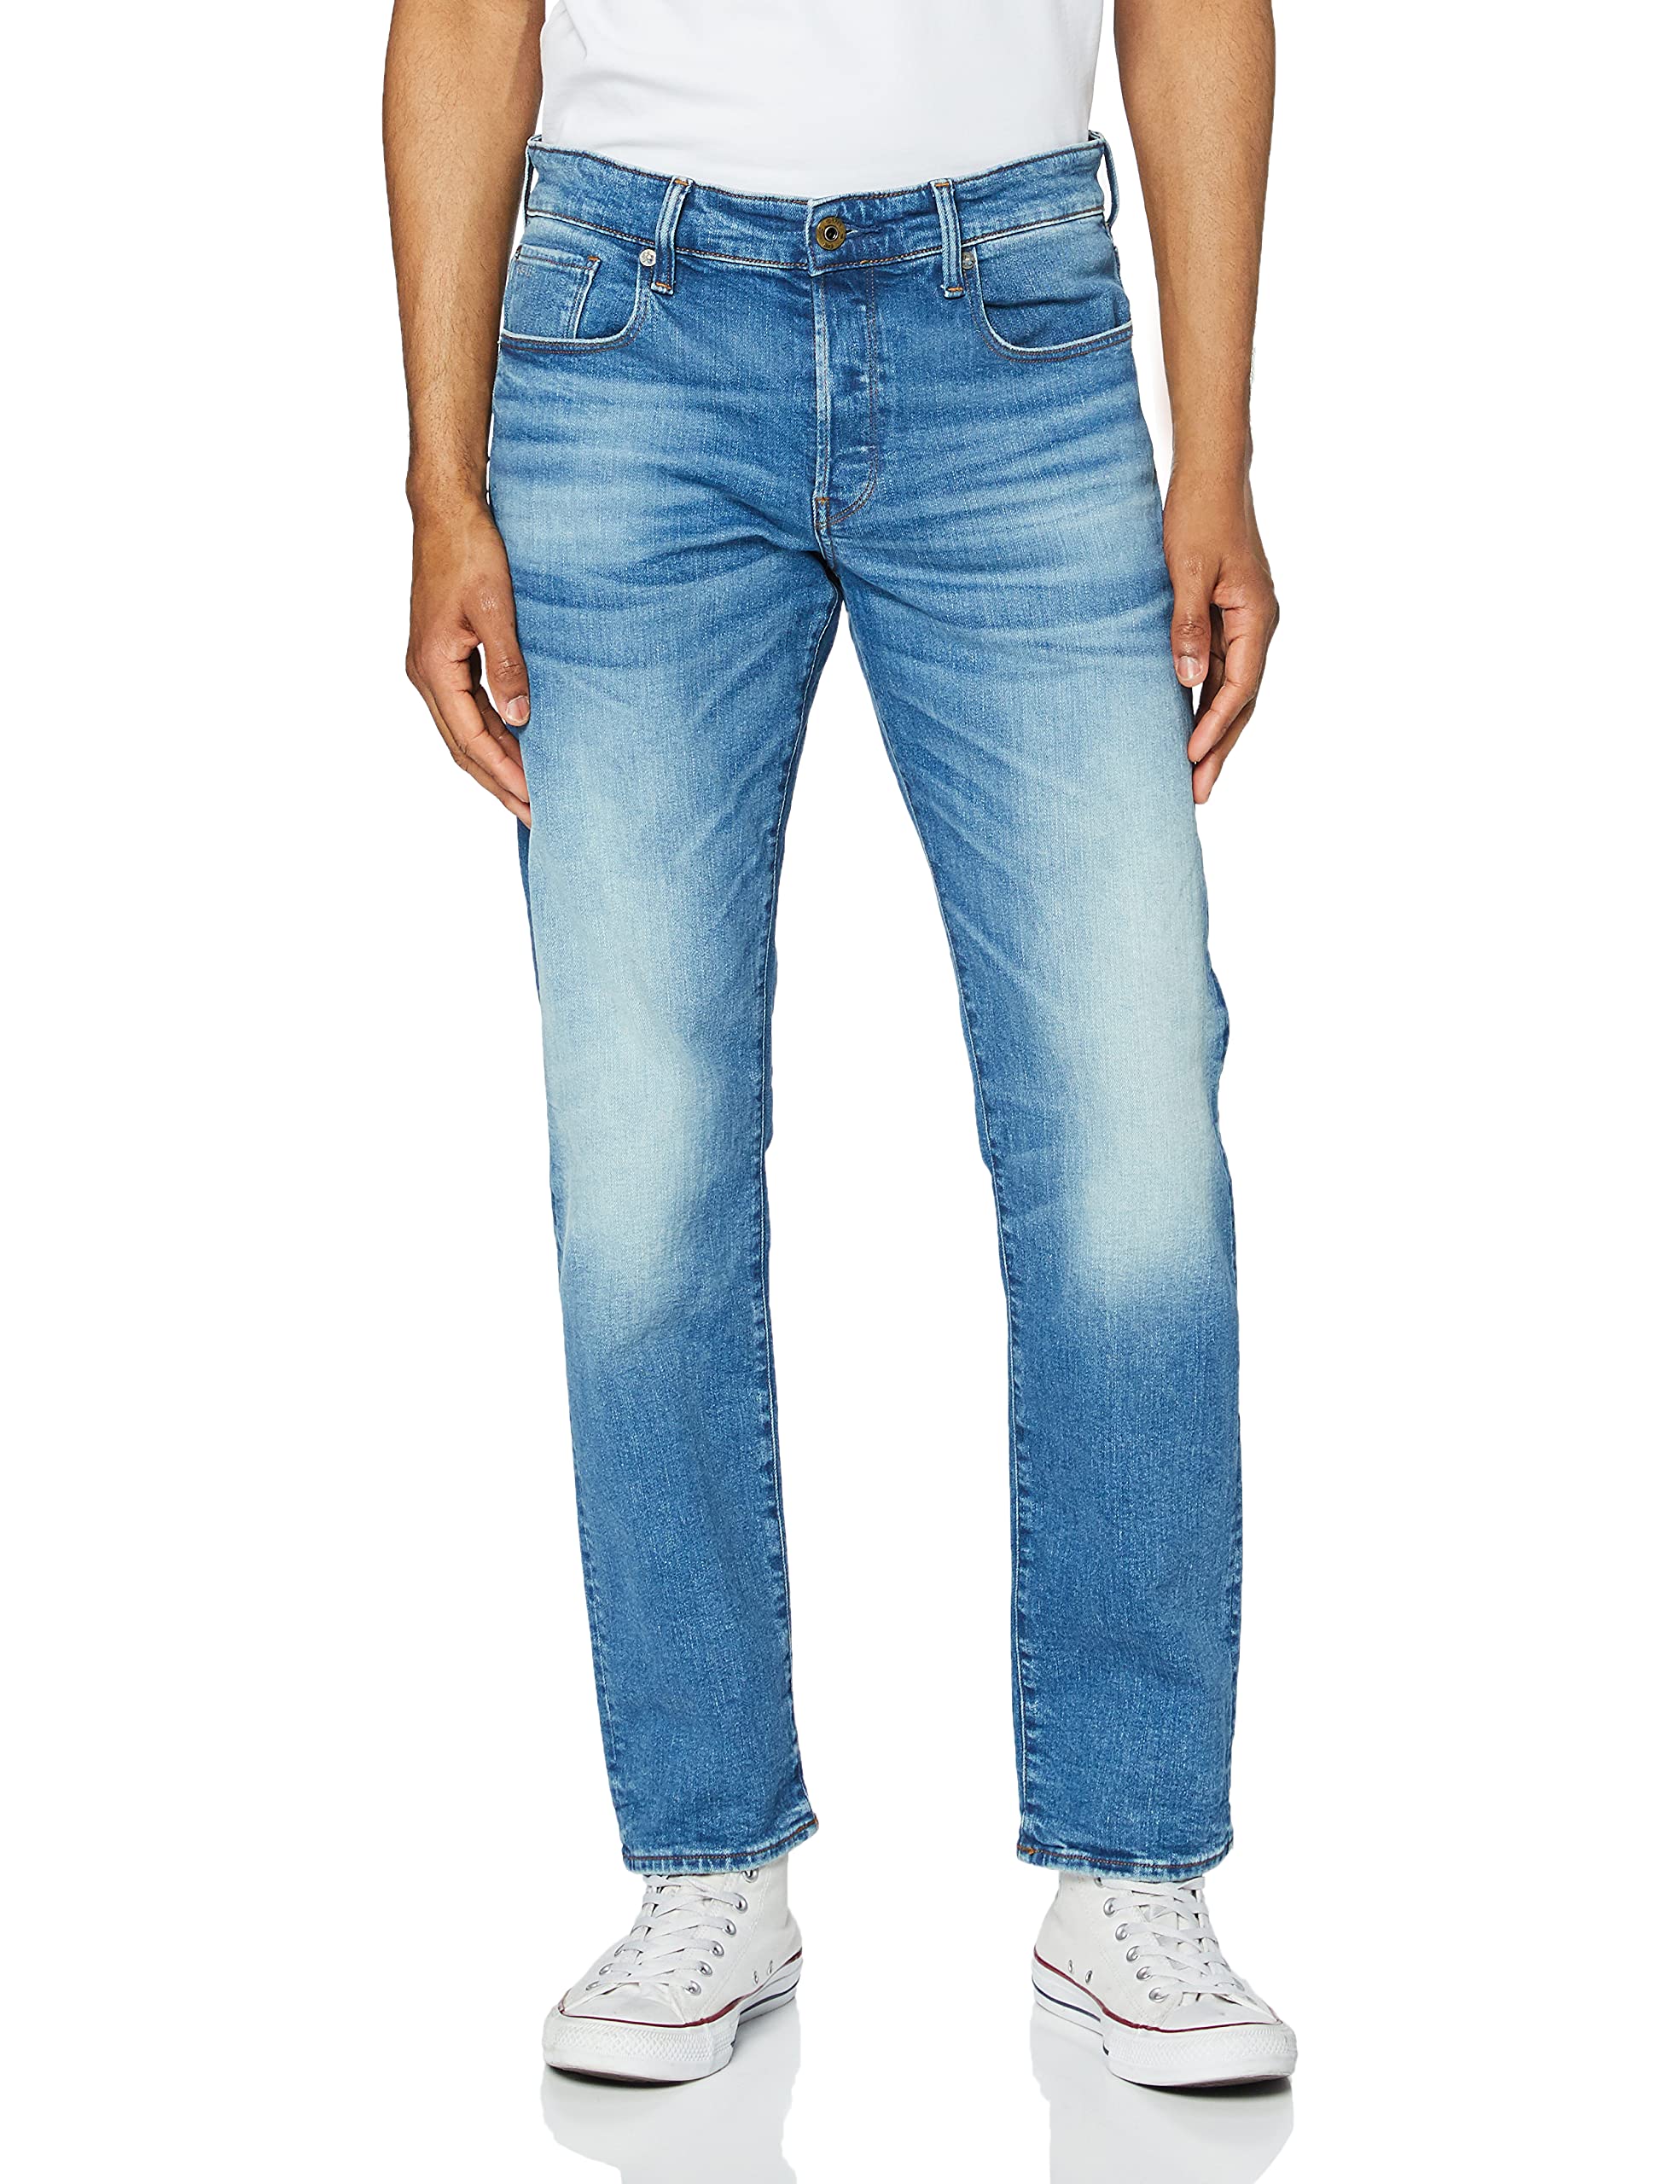 G-STAR RAW Herren 3301 Regular Straight Jeans, Blau (authentic faded blue 51002-B631-A817), 27W / 30L